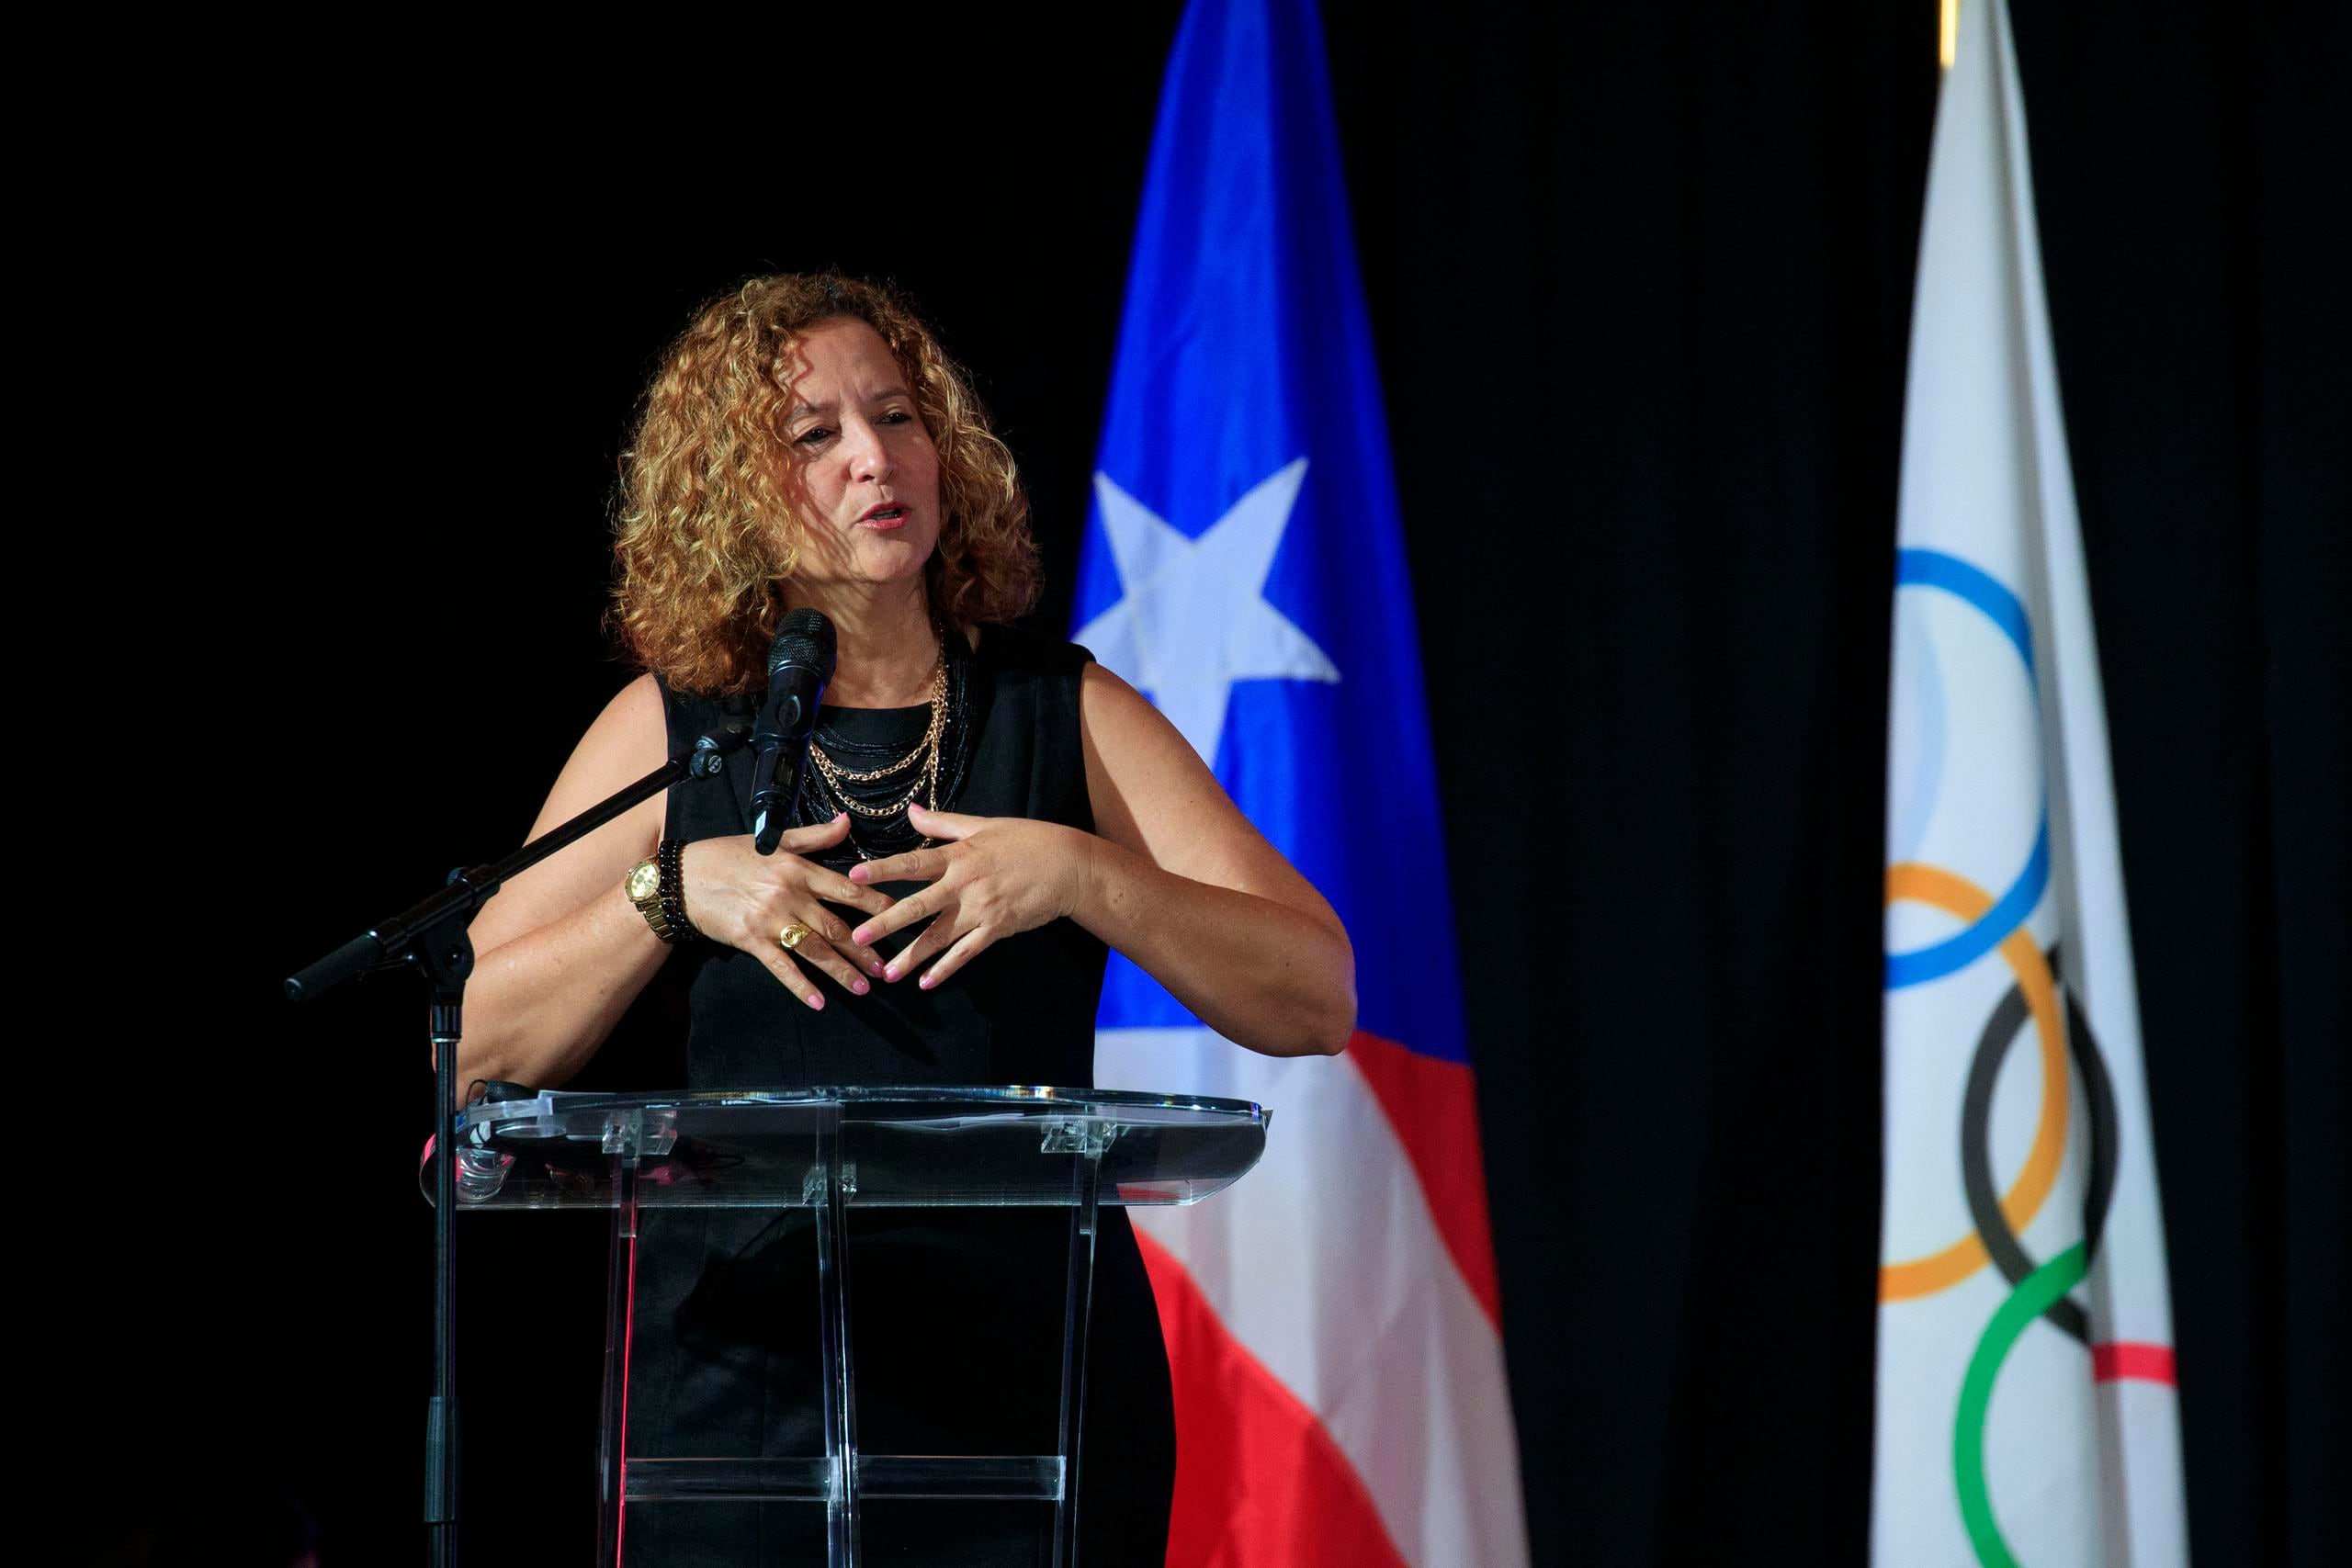 La transportaciones de las delegaciones a San Salvador y Santiago costará $1.8 millones, informó Sara Rosario, presidenta del Copur.